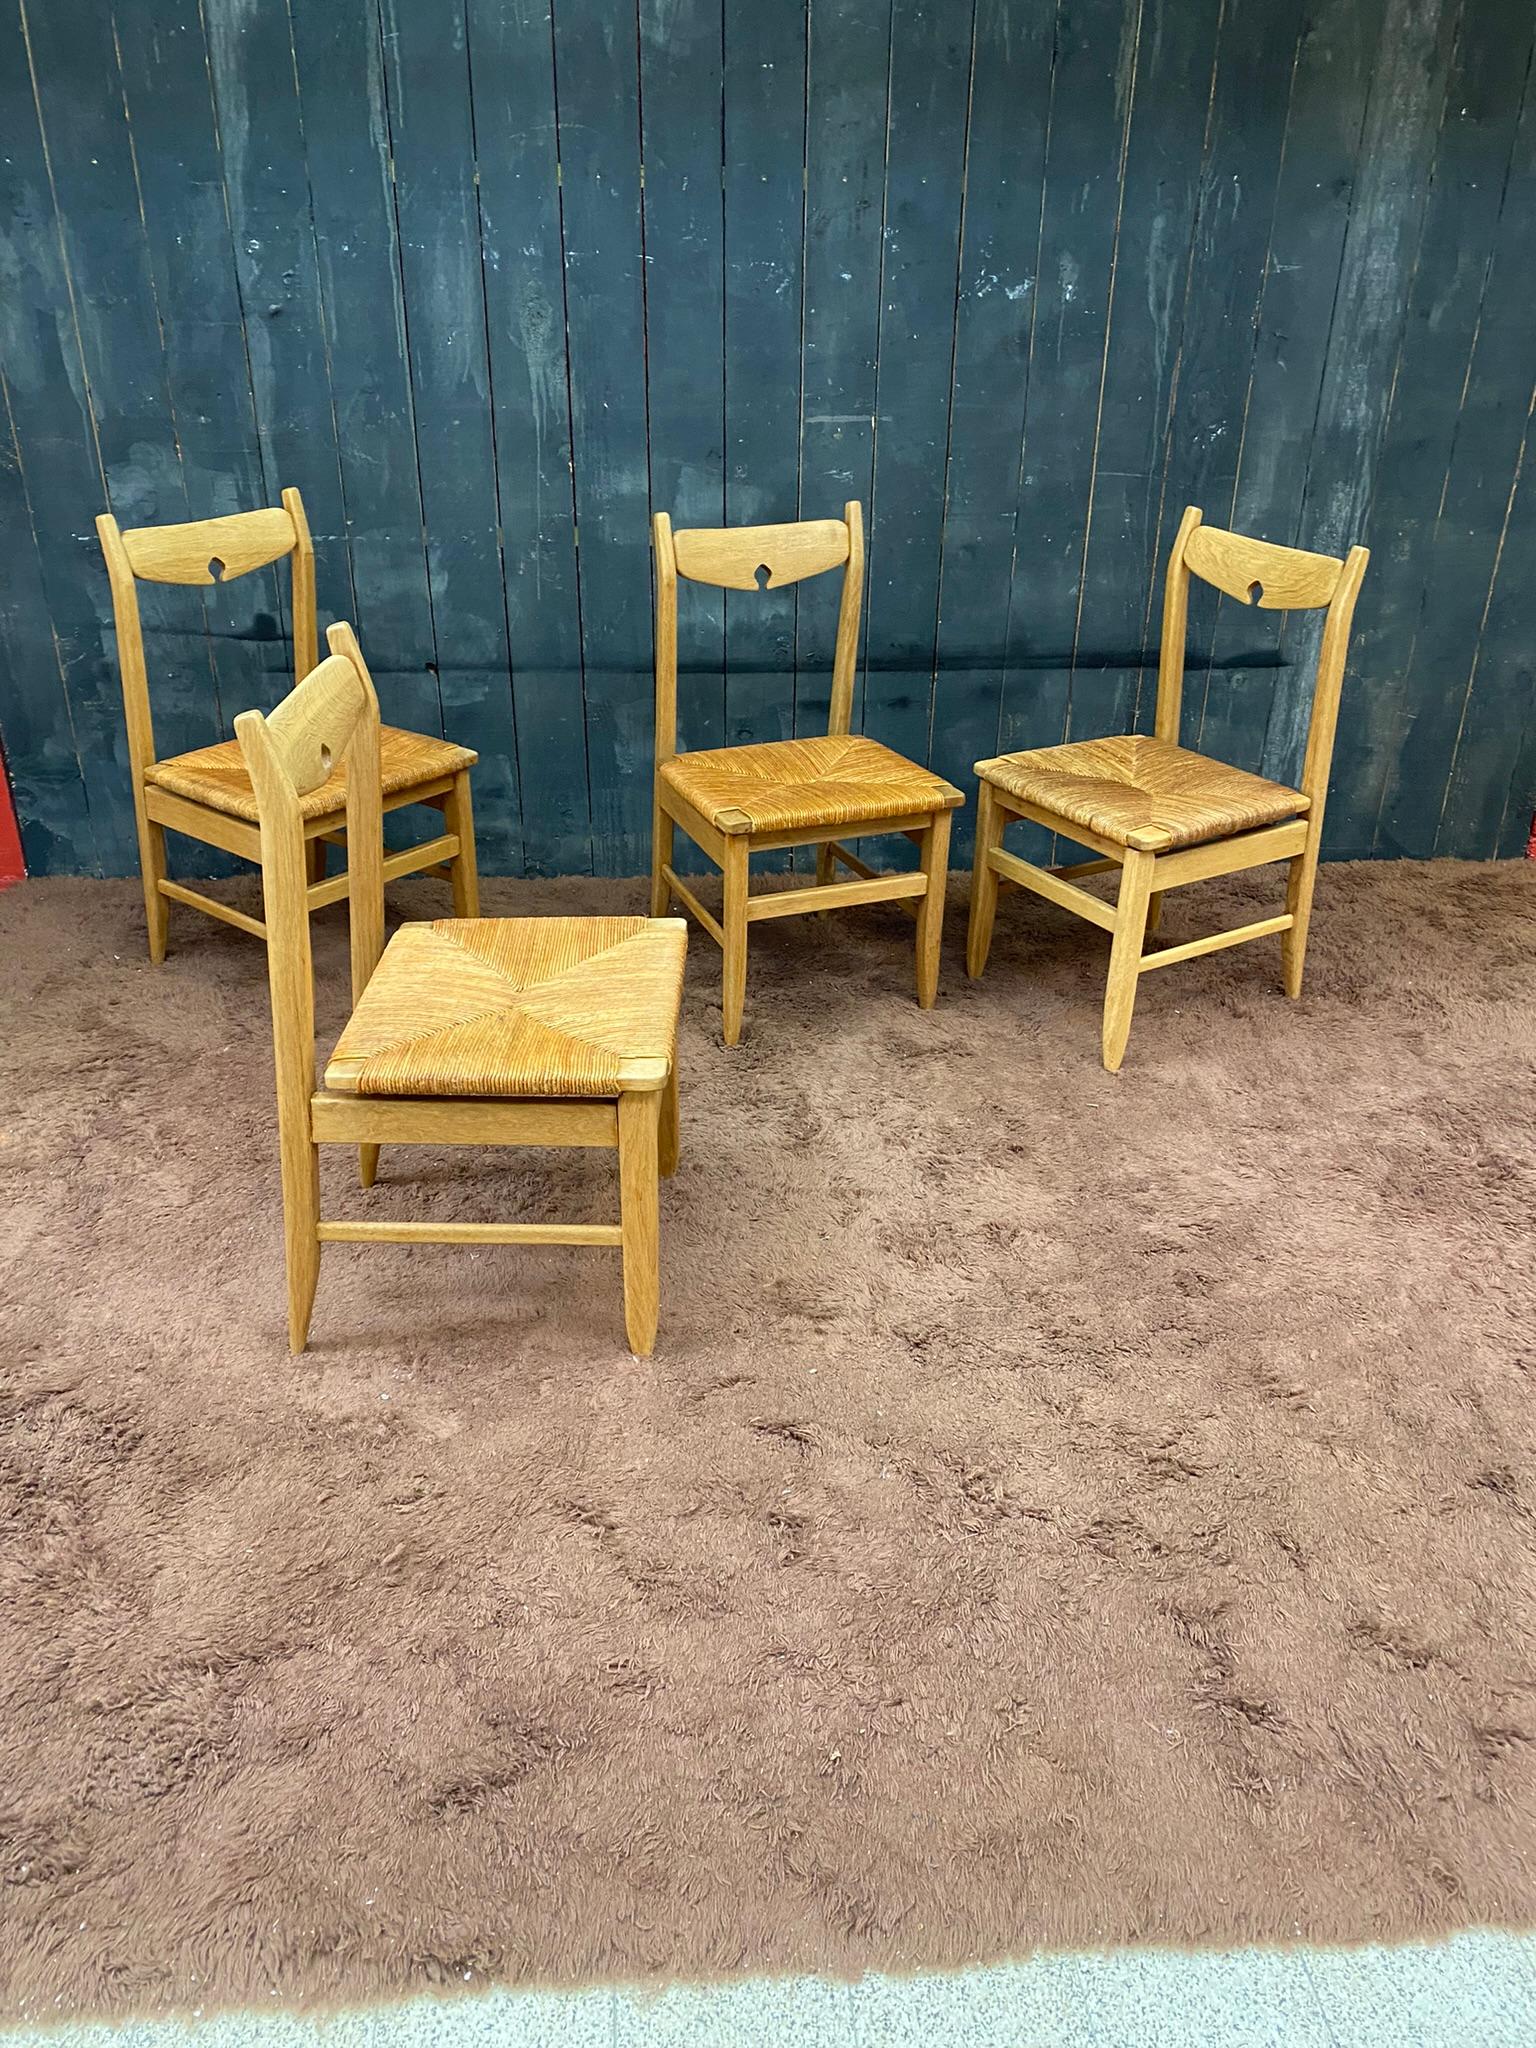 Guillerme et Chambron SET OF 4 chairs Edition Votre Maison, um 1970.
Holz und Strohhalme sind in gutem Zustand.